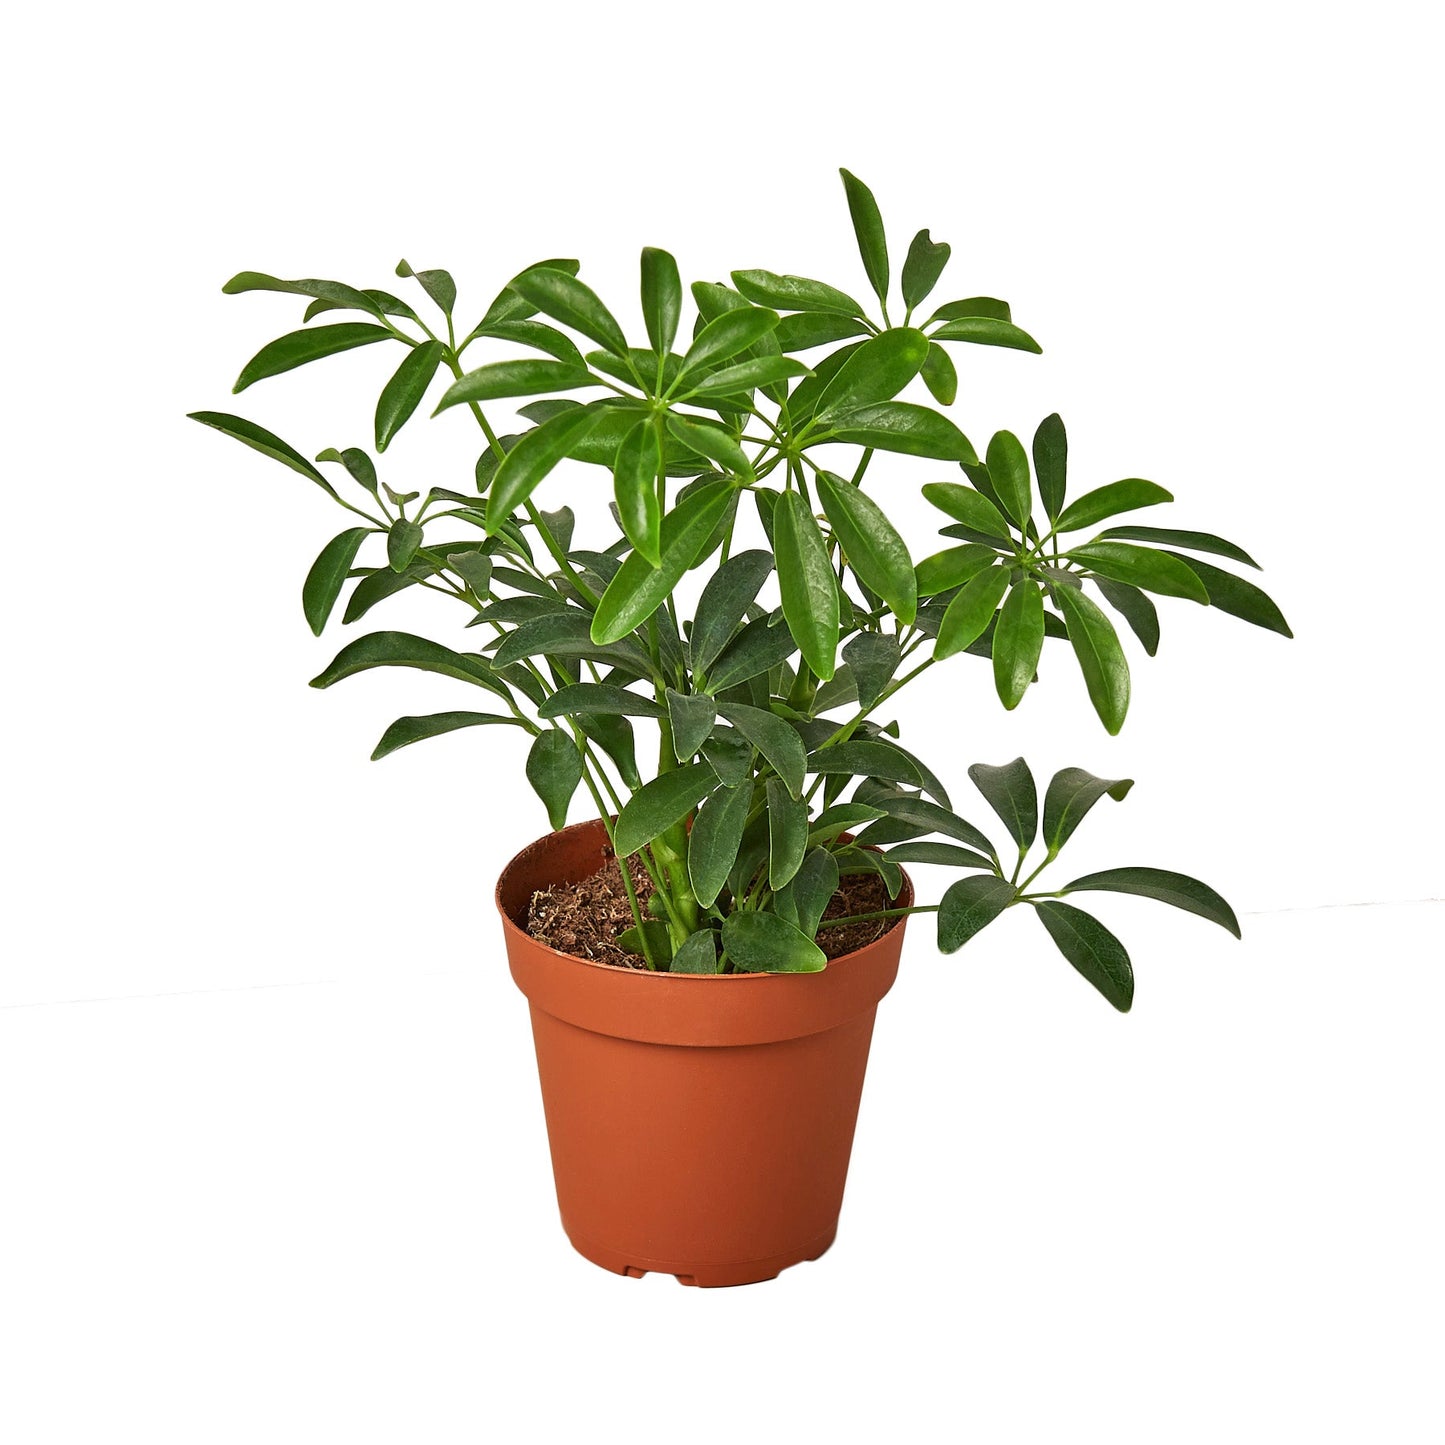 2 Different Schefflera Plants Variety Pack